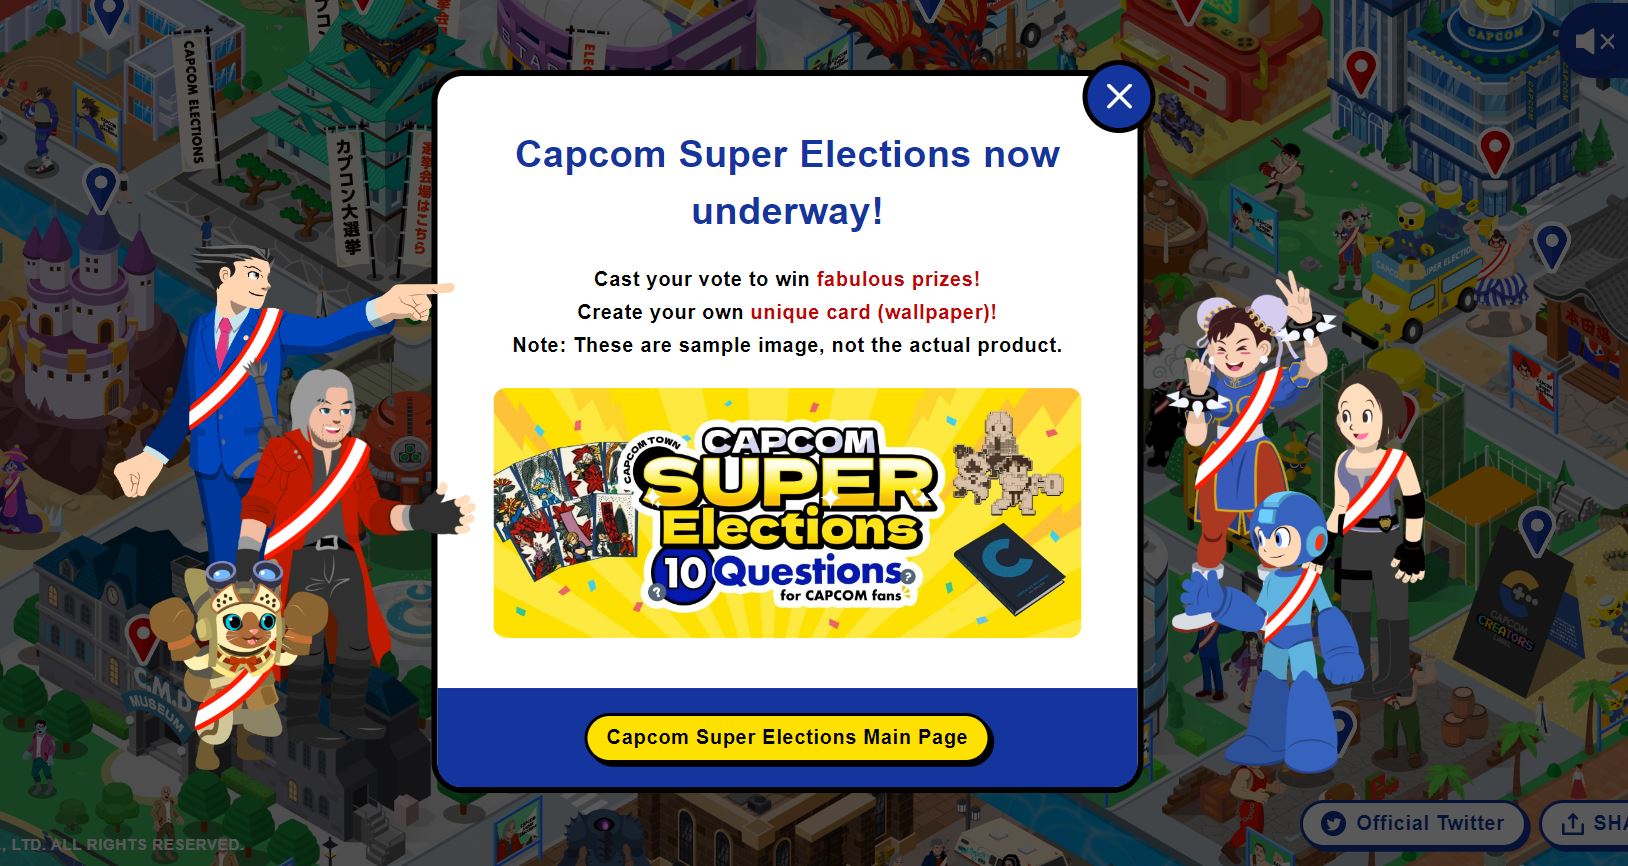 Capcom Super Elections introduction screen